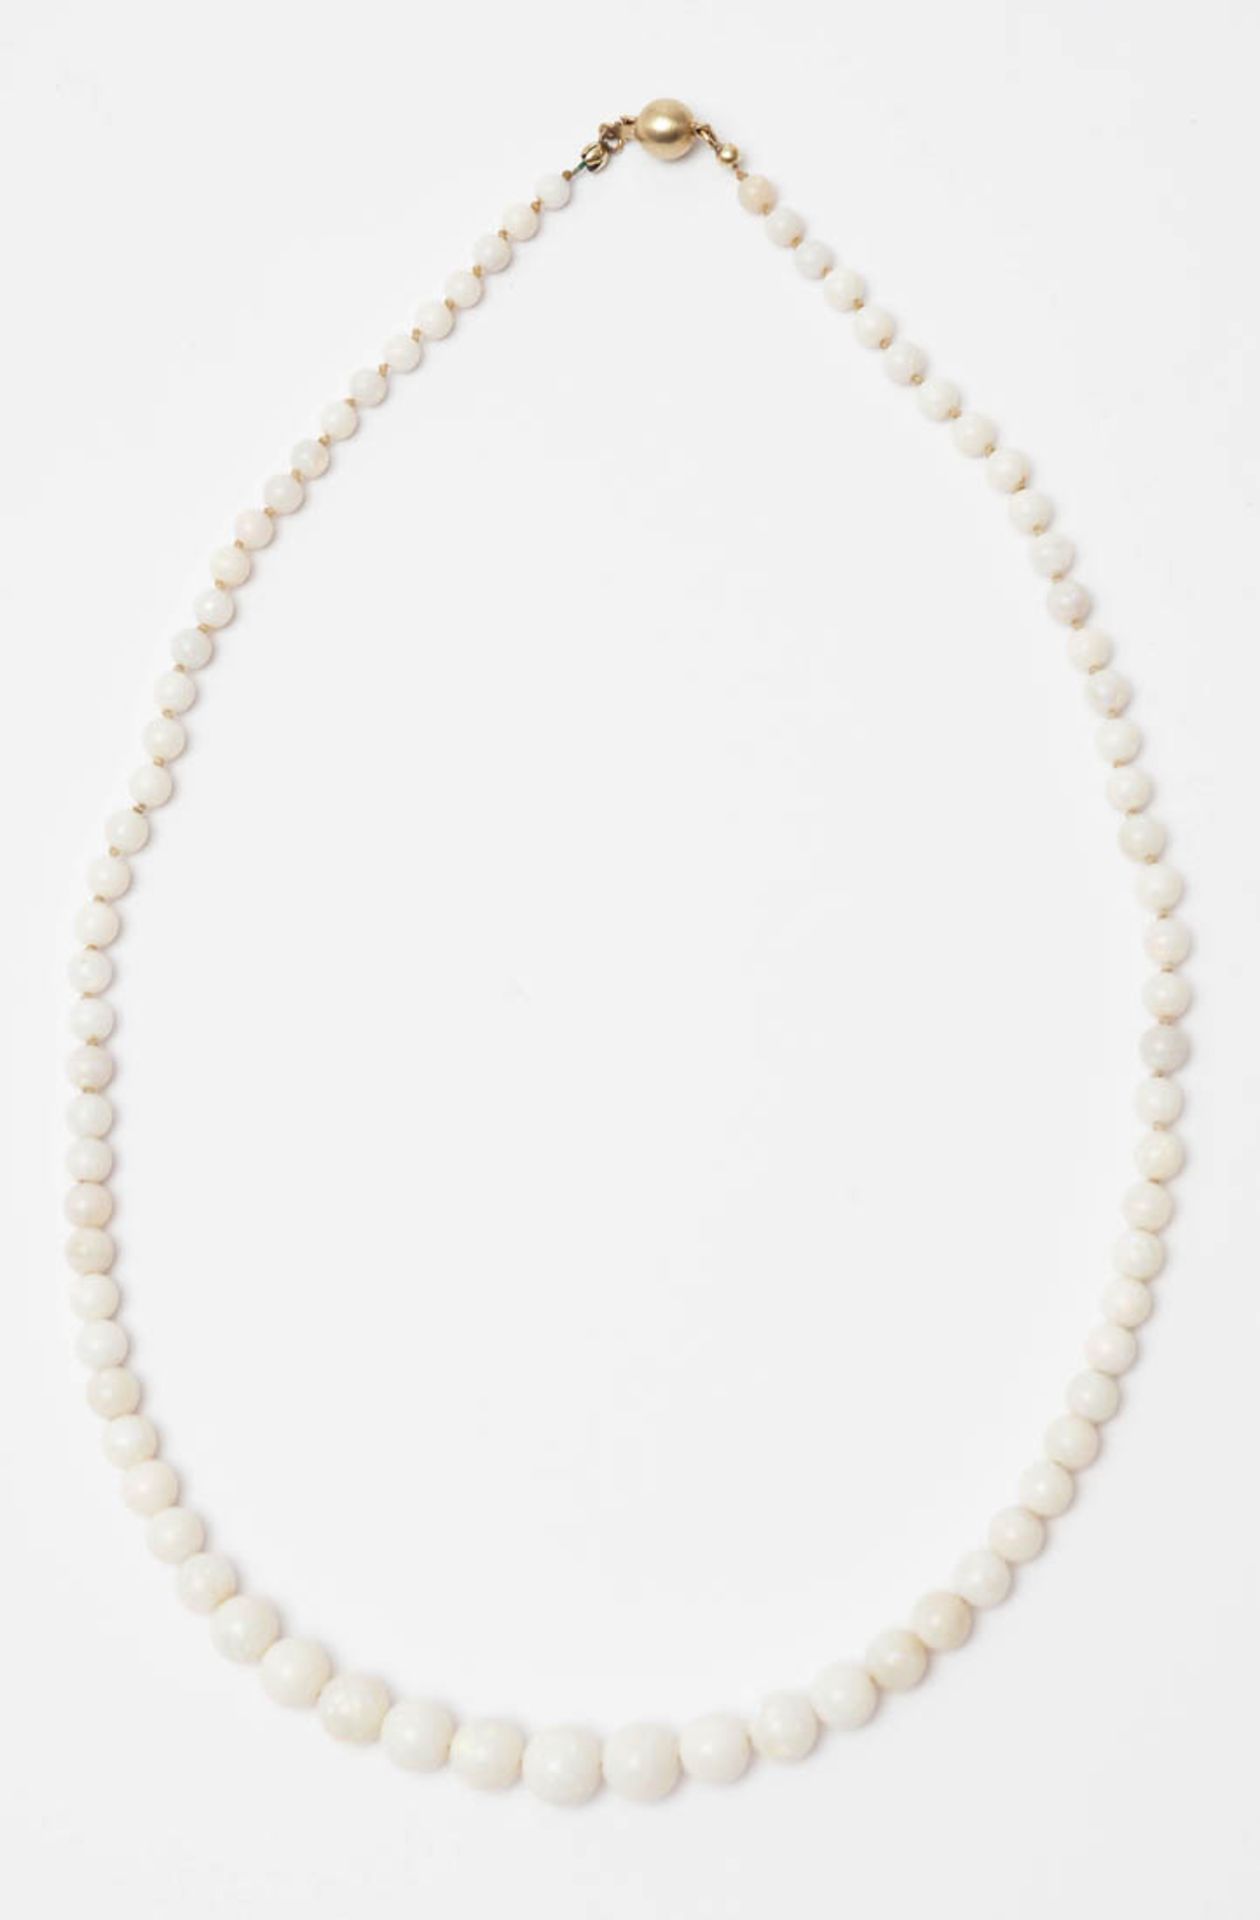 Halskette Verlaufende Form aus weißen Opalkugeln. Passendes Schloss aus GG 14kt. L.47,5cm.